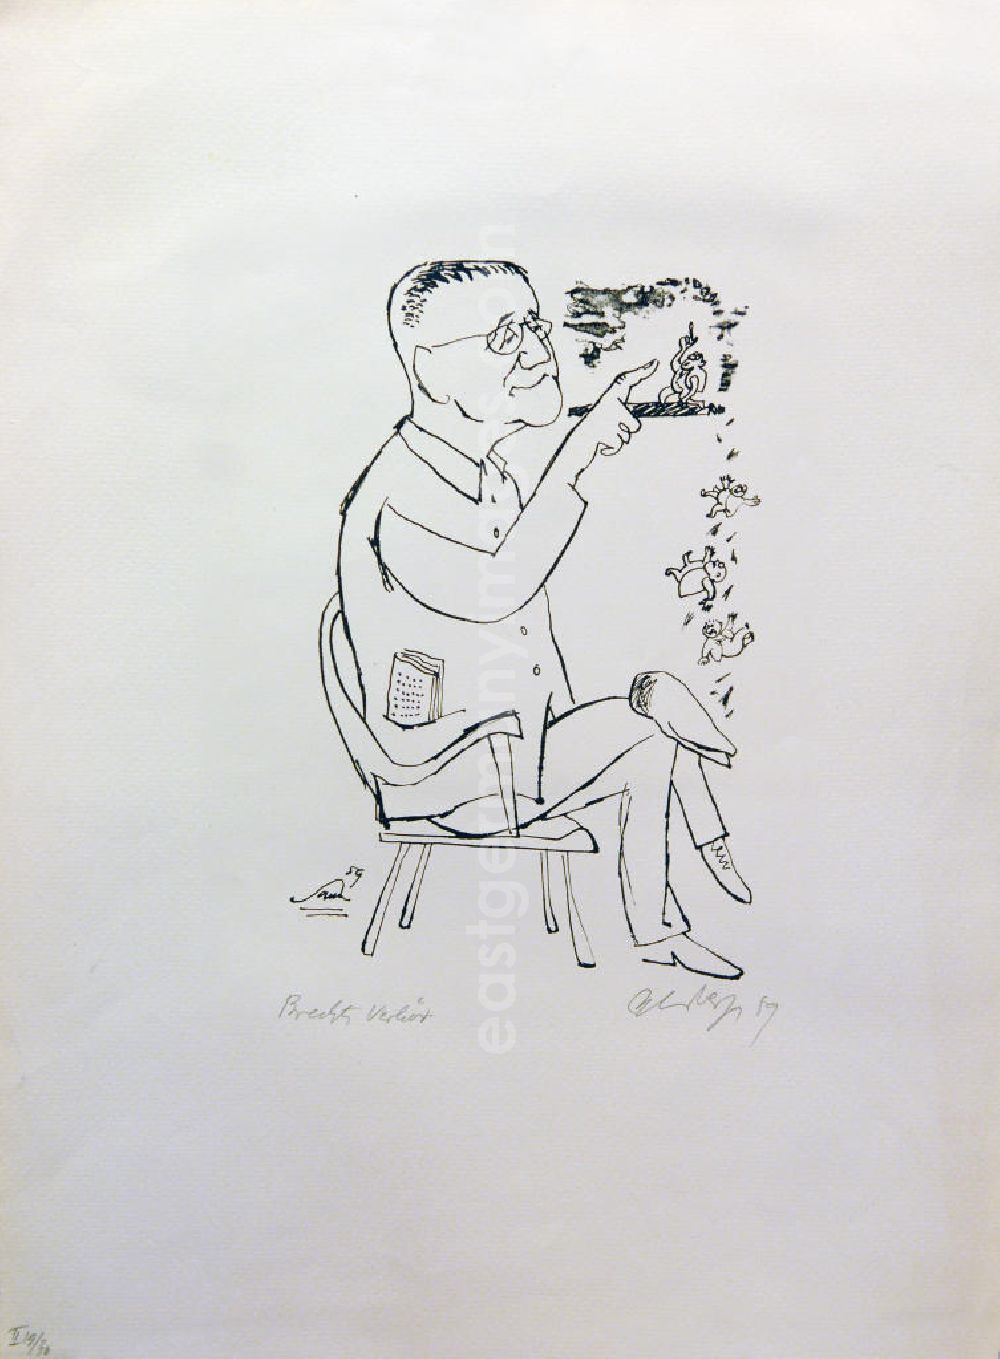 GDR photo archive: Berlin - Grafik von Herbert Sandberg über Bertolt Brecht (*10.02.1898 †14.08.1956) aus dem Jahr 1959 Brechts Verhör 26x18cm Lithographie, handsigniert, II 19/3